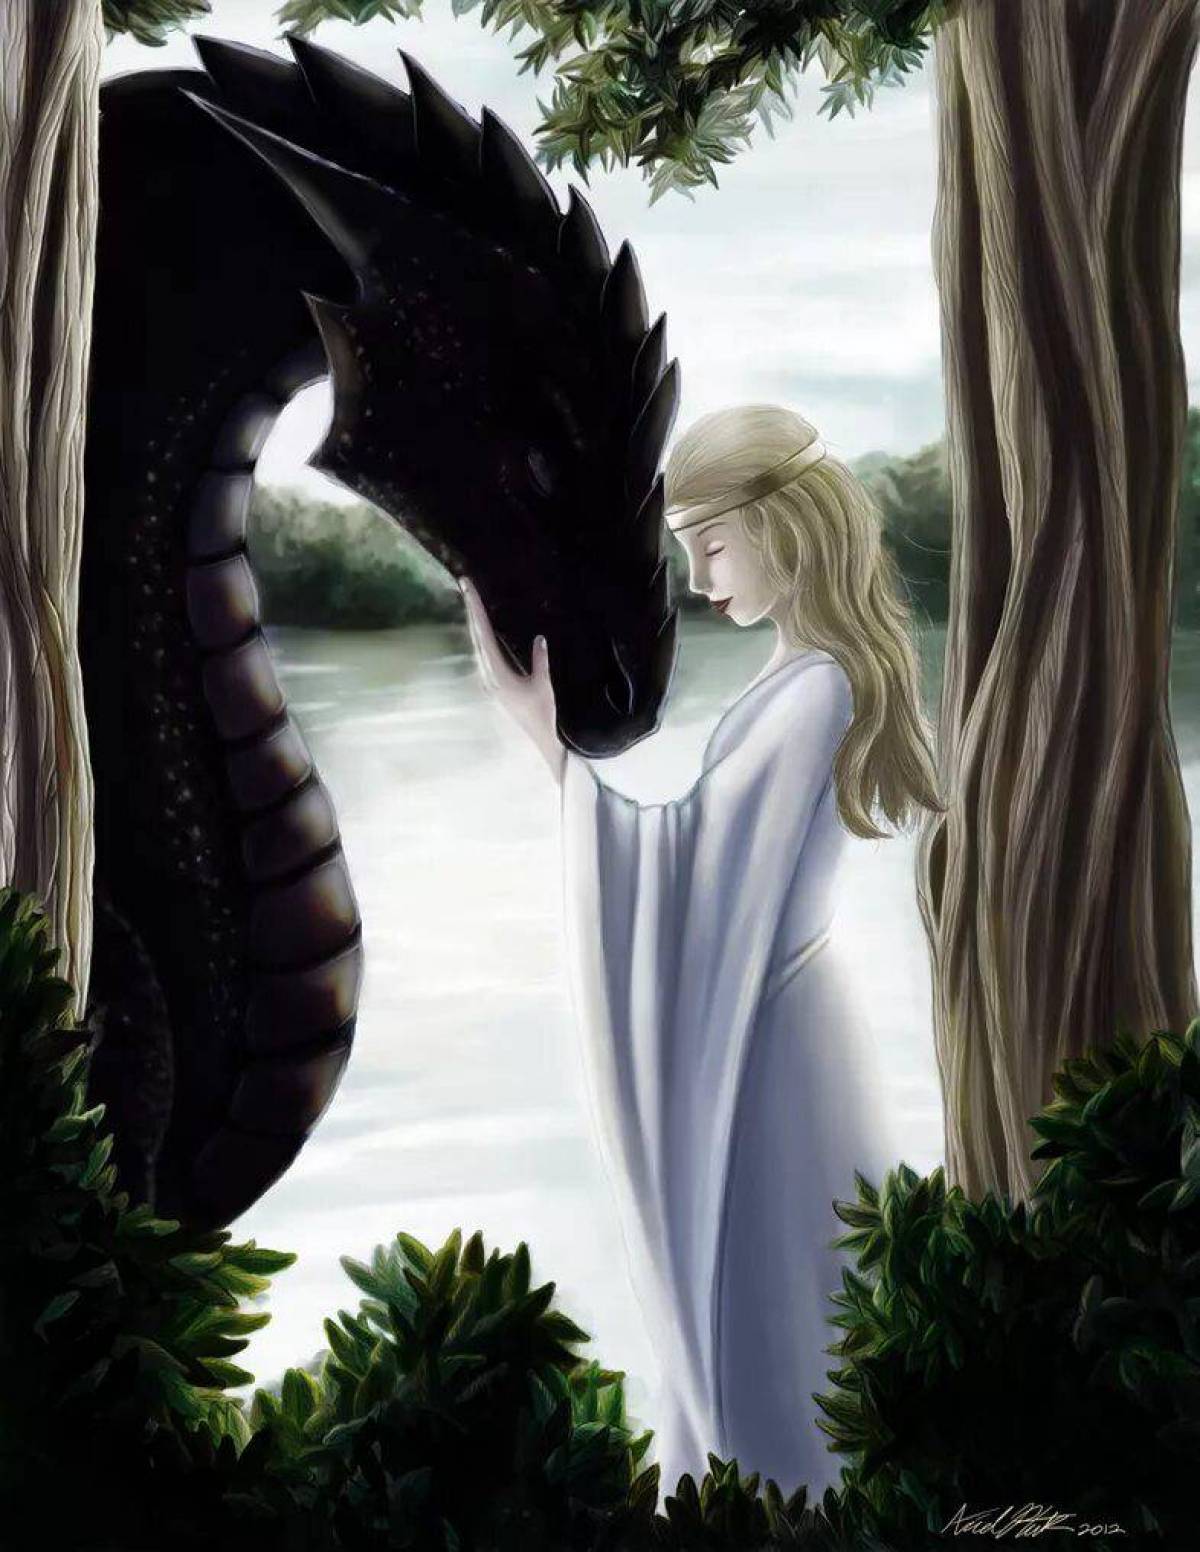 Сказка о царстве драконов, доброй фее и принцессе Изабель. Девушка и дракон. Дракон и девушка лубов. Девочка и дракон. Принцессы ненавидят драконов